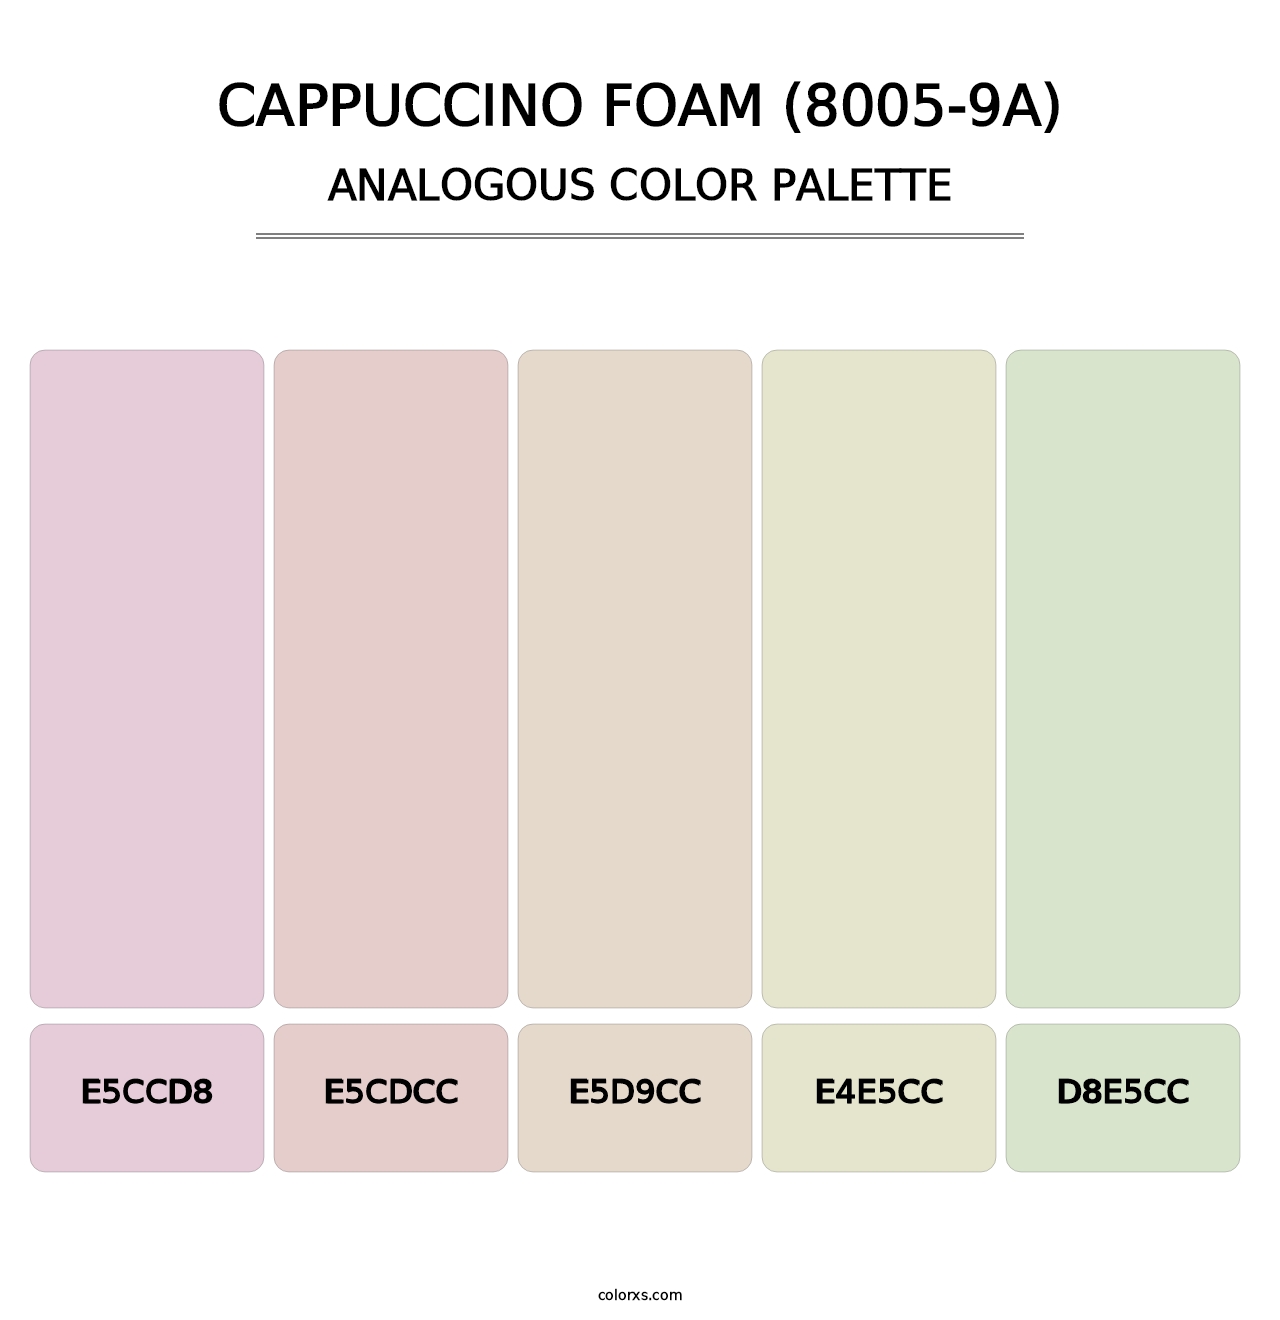 Cappuccino Foam (8005-9A) - Analogous Color Palette